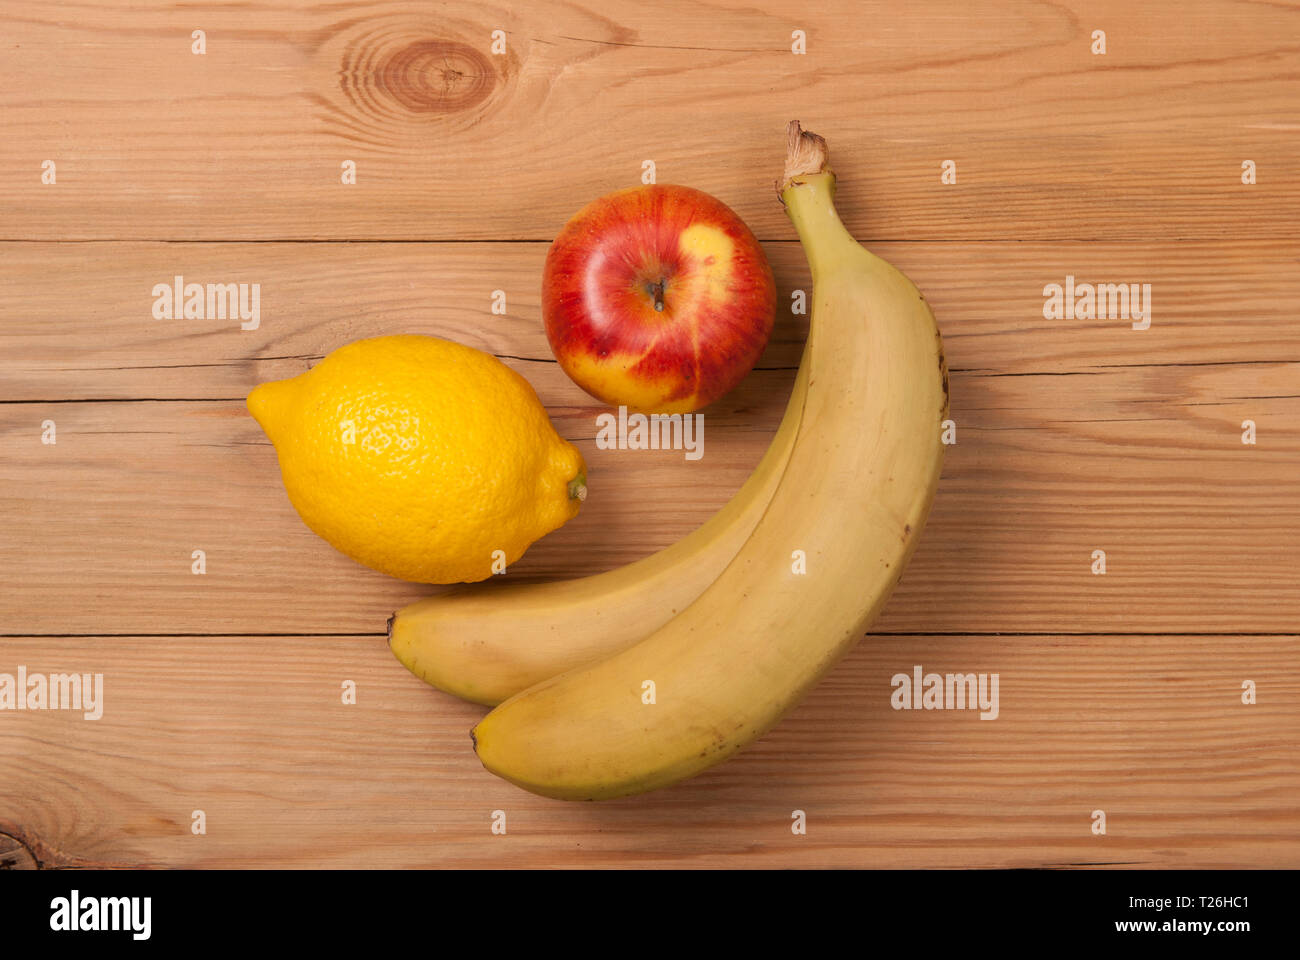 Zitrone, Apfel und Bananen auf einer hölzernen Hintergrund. Blick von oben. Stockfoto